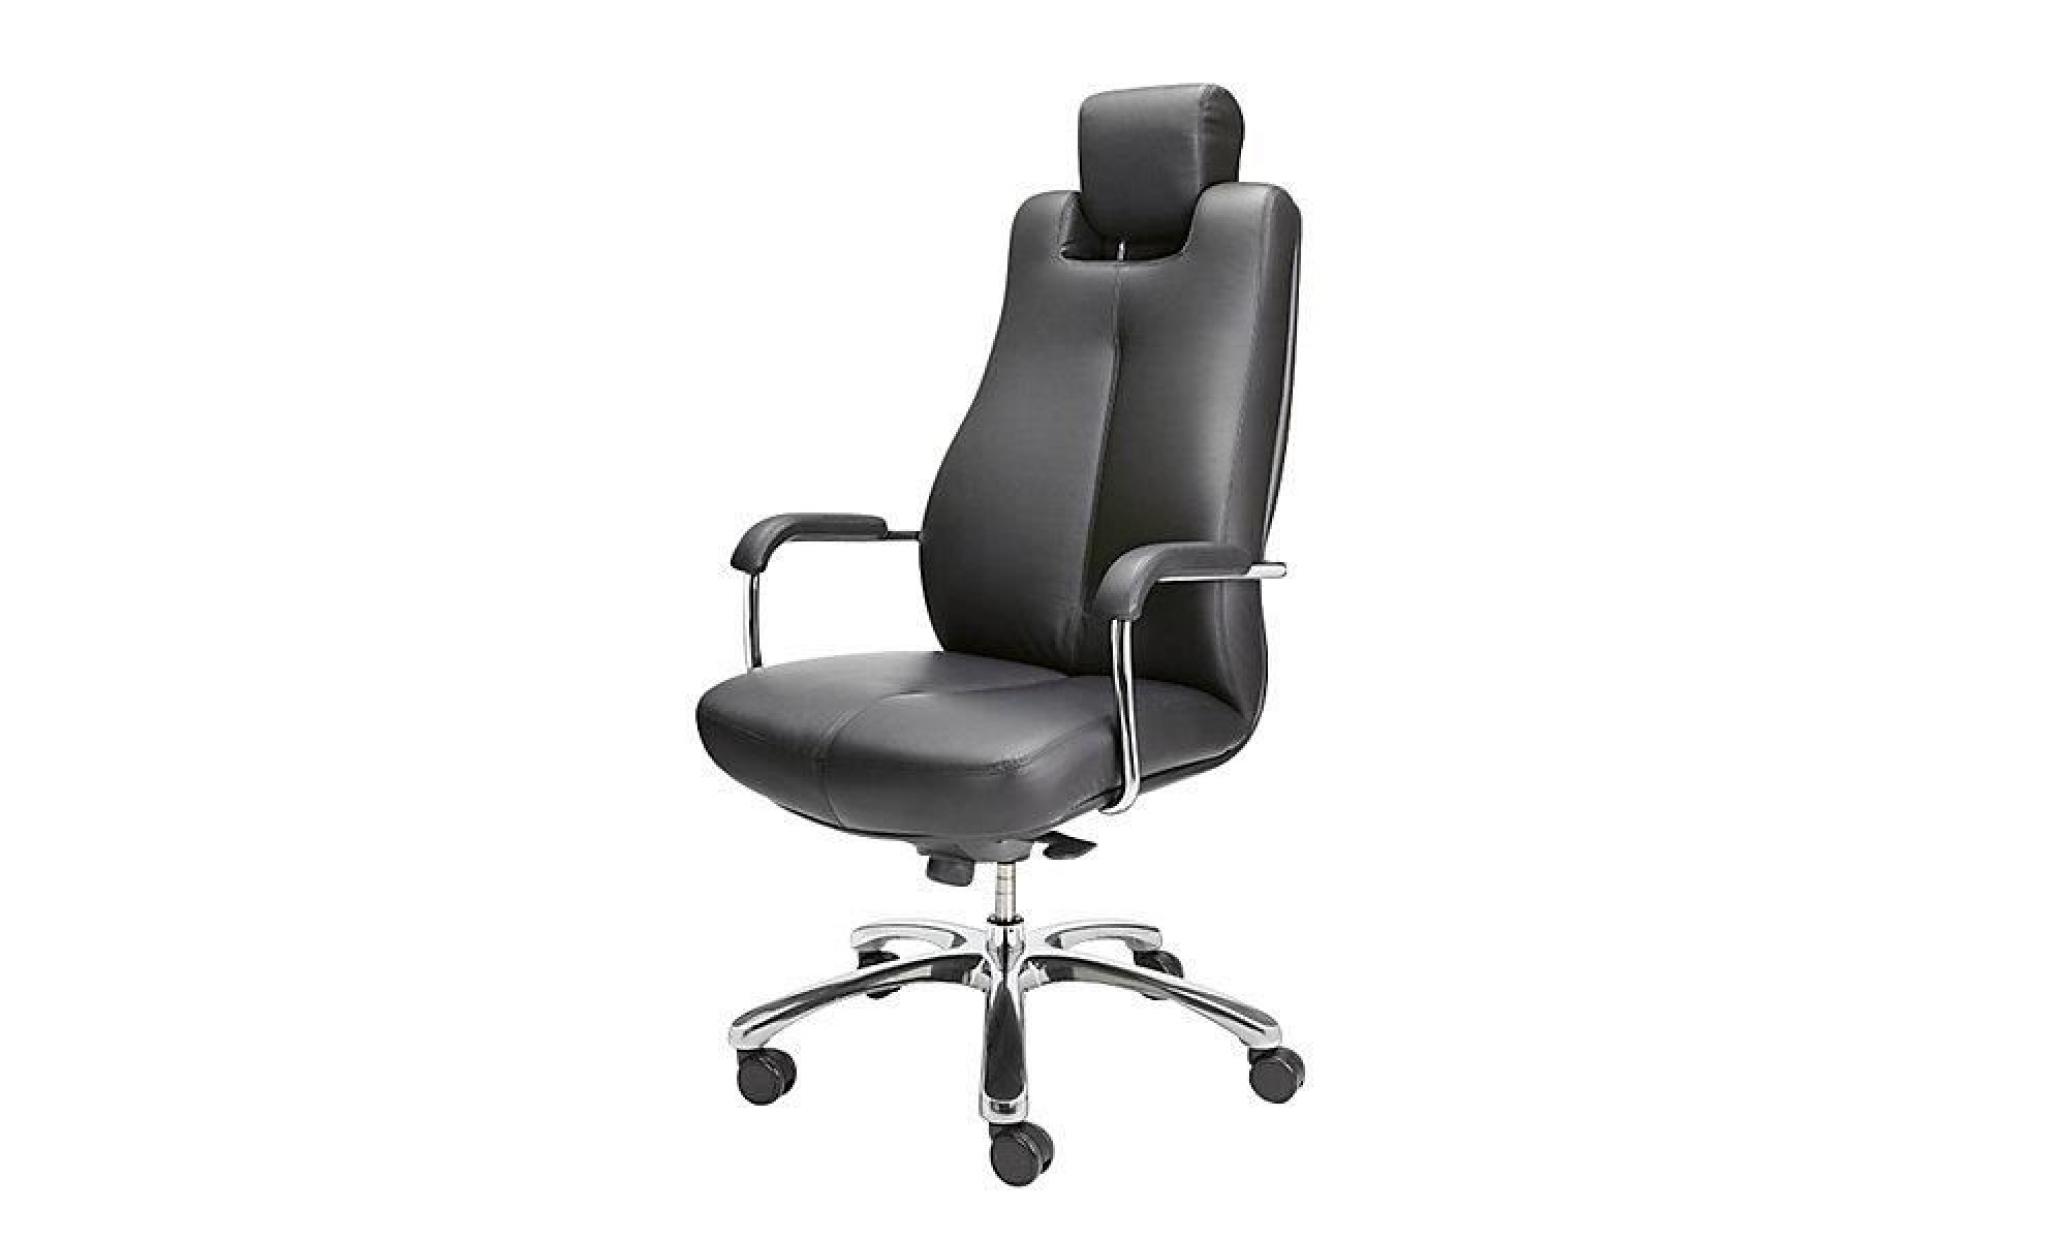 siège de bureau pivotant   fauteuil de bureau, cuir souple   noir, appuie tête réglable   chaise chaise de bureau chaises chaises de pas cher